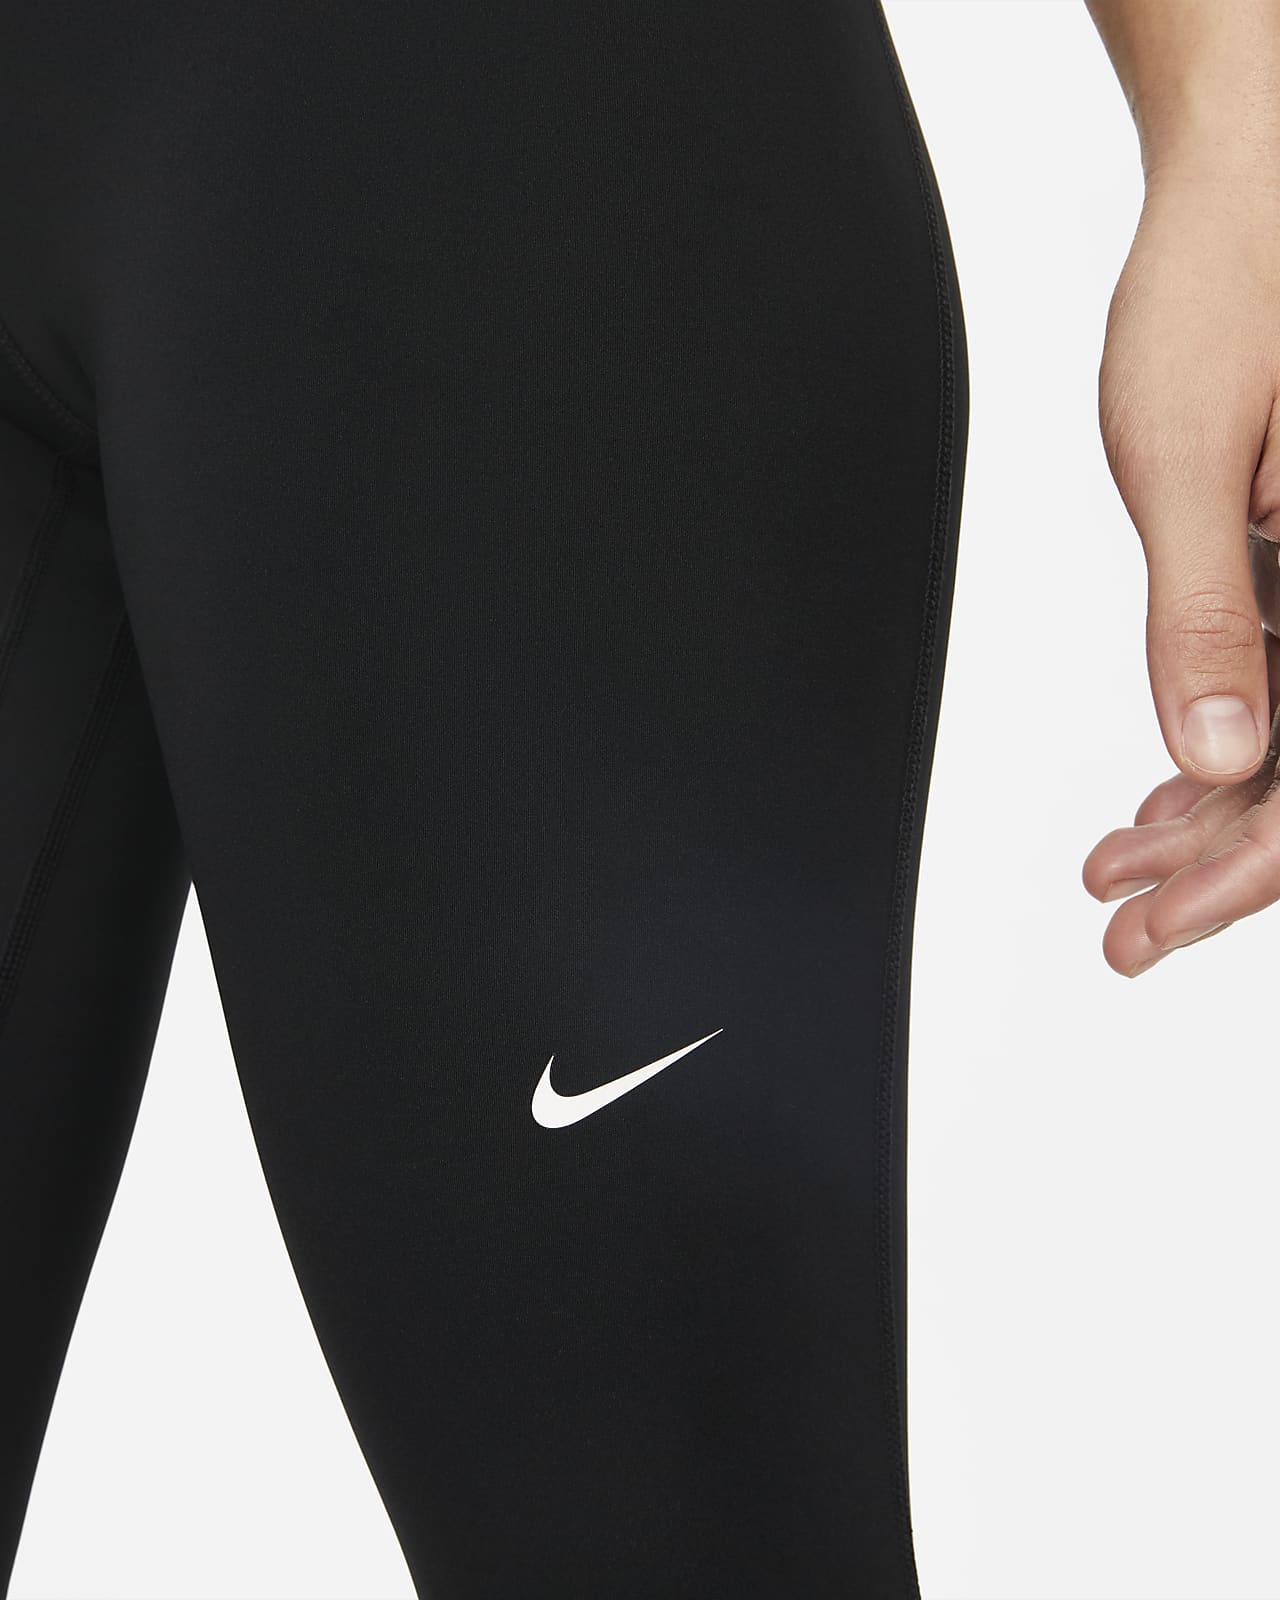 verantwoordelijkheid Denken instant Nike Pro Legging met halfhoge taille en mesh vlakken voor dames. Nike NL